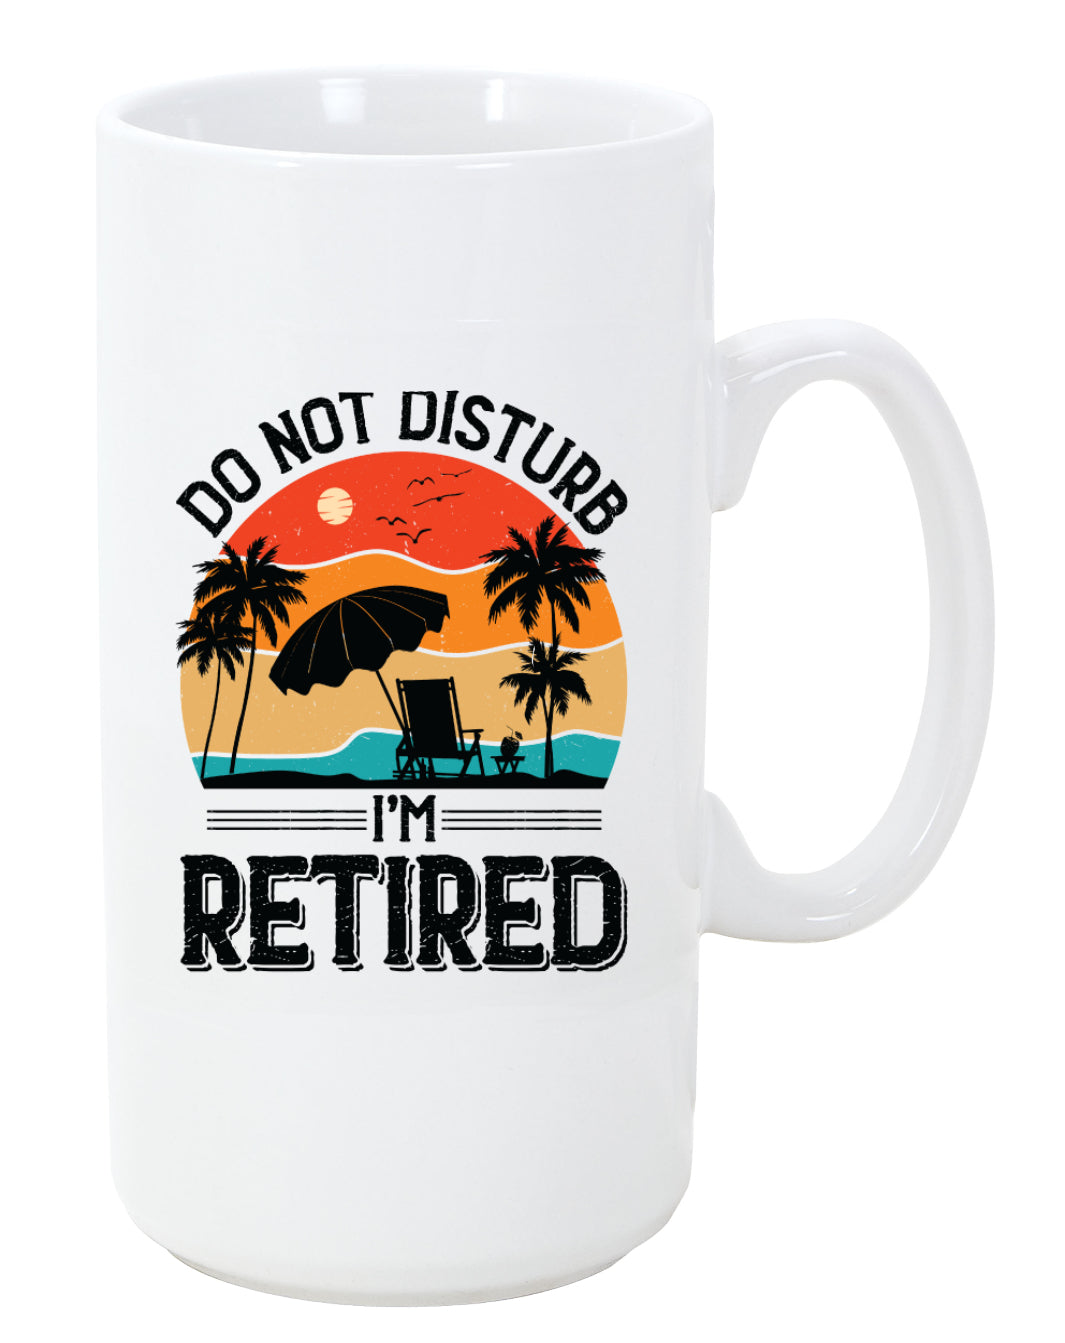 Retirement Coffee Mug, Do not Disturb, 11oz, 15oz, 20oz, Black Ringer Coffee Mug 11oz, Stainless Steel Travel Mug 14oz Ceramic Drinkware